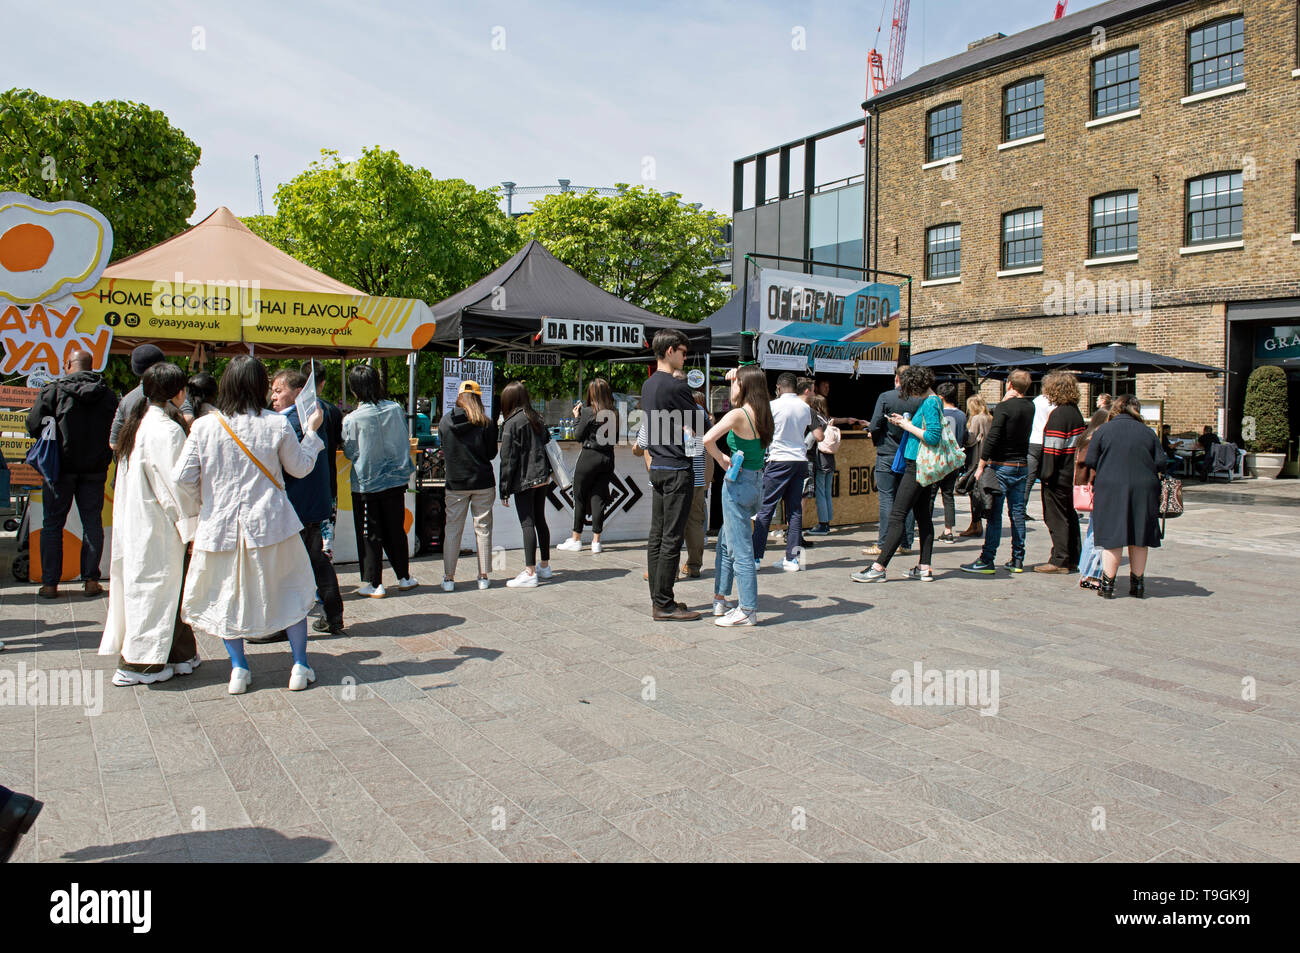 Imbissstände einschließlich Jaaa Jaaa und Da Fish Ting mit Menschen vor queuing Getreidespeicher Square Kings Cross, London Borough von Camden England Großbritannien UK Stockfoto